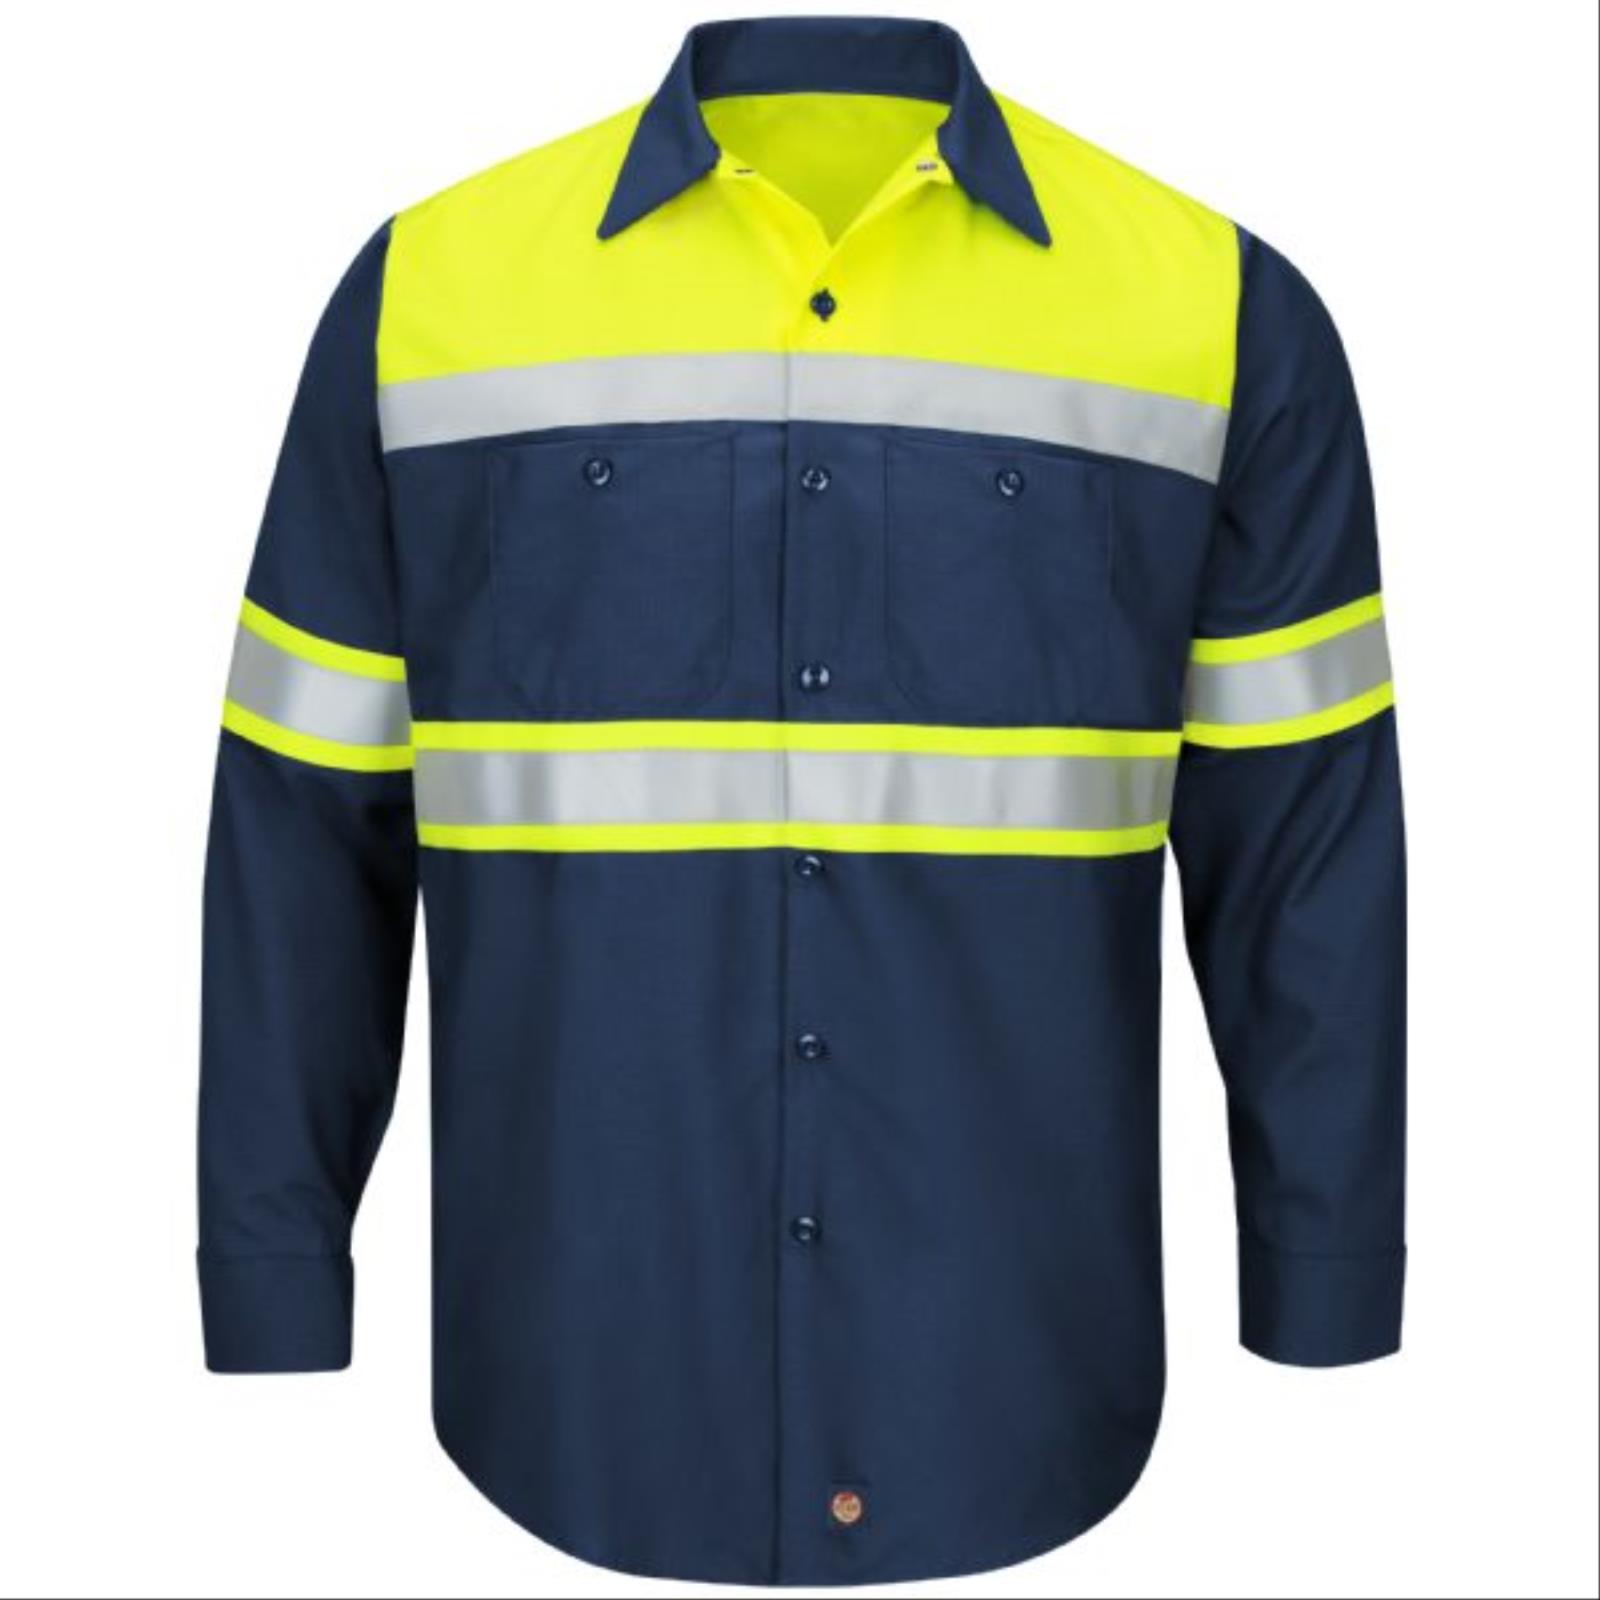 Red Kap Hi-Viz Colorblock, Long Sleeve, Ripstop Work Shirt, Class 1 Type O